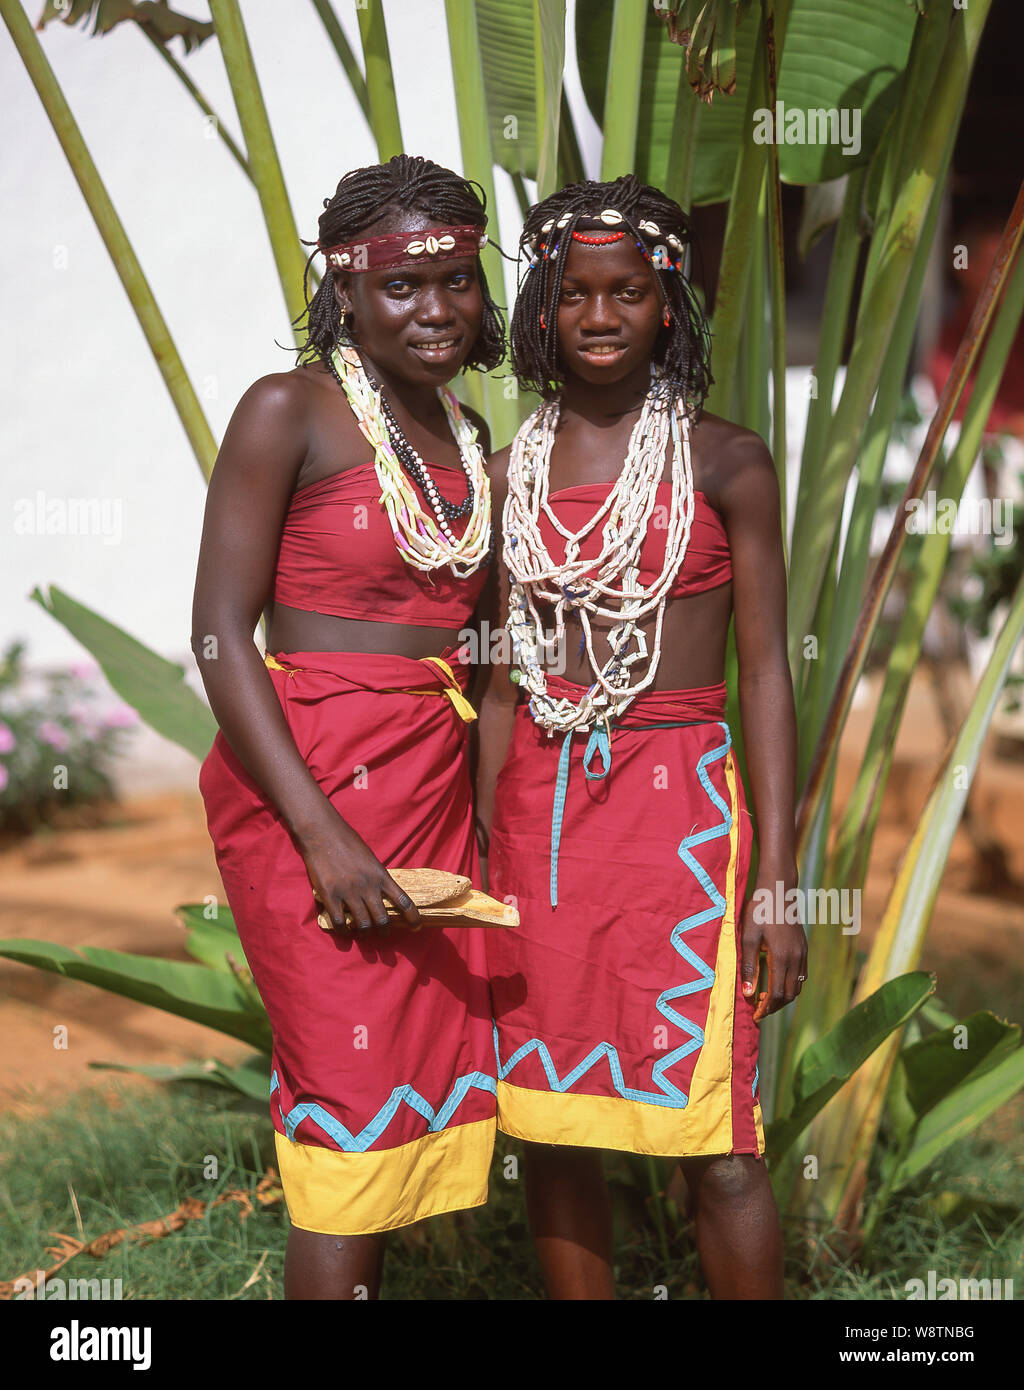 Les jeunes danseuses au spectacle de danse tribale, Banjul, Gambie Banque D'Images